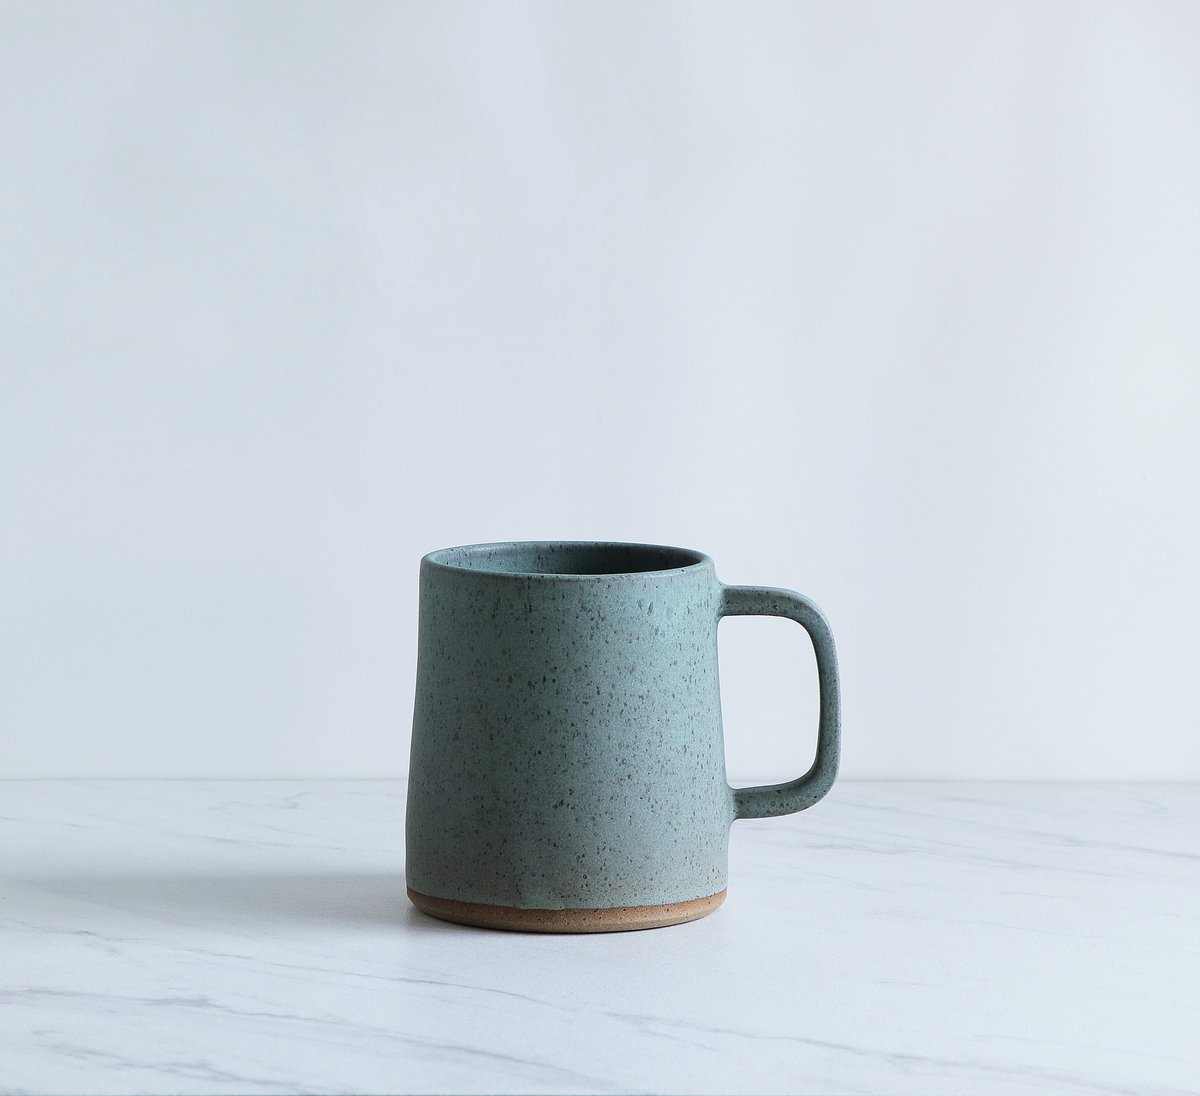 Image of 16 oz mug, glazed in Mint